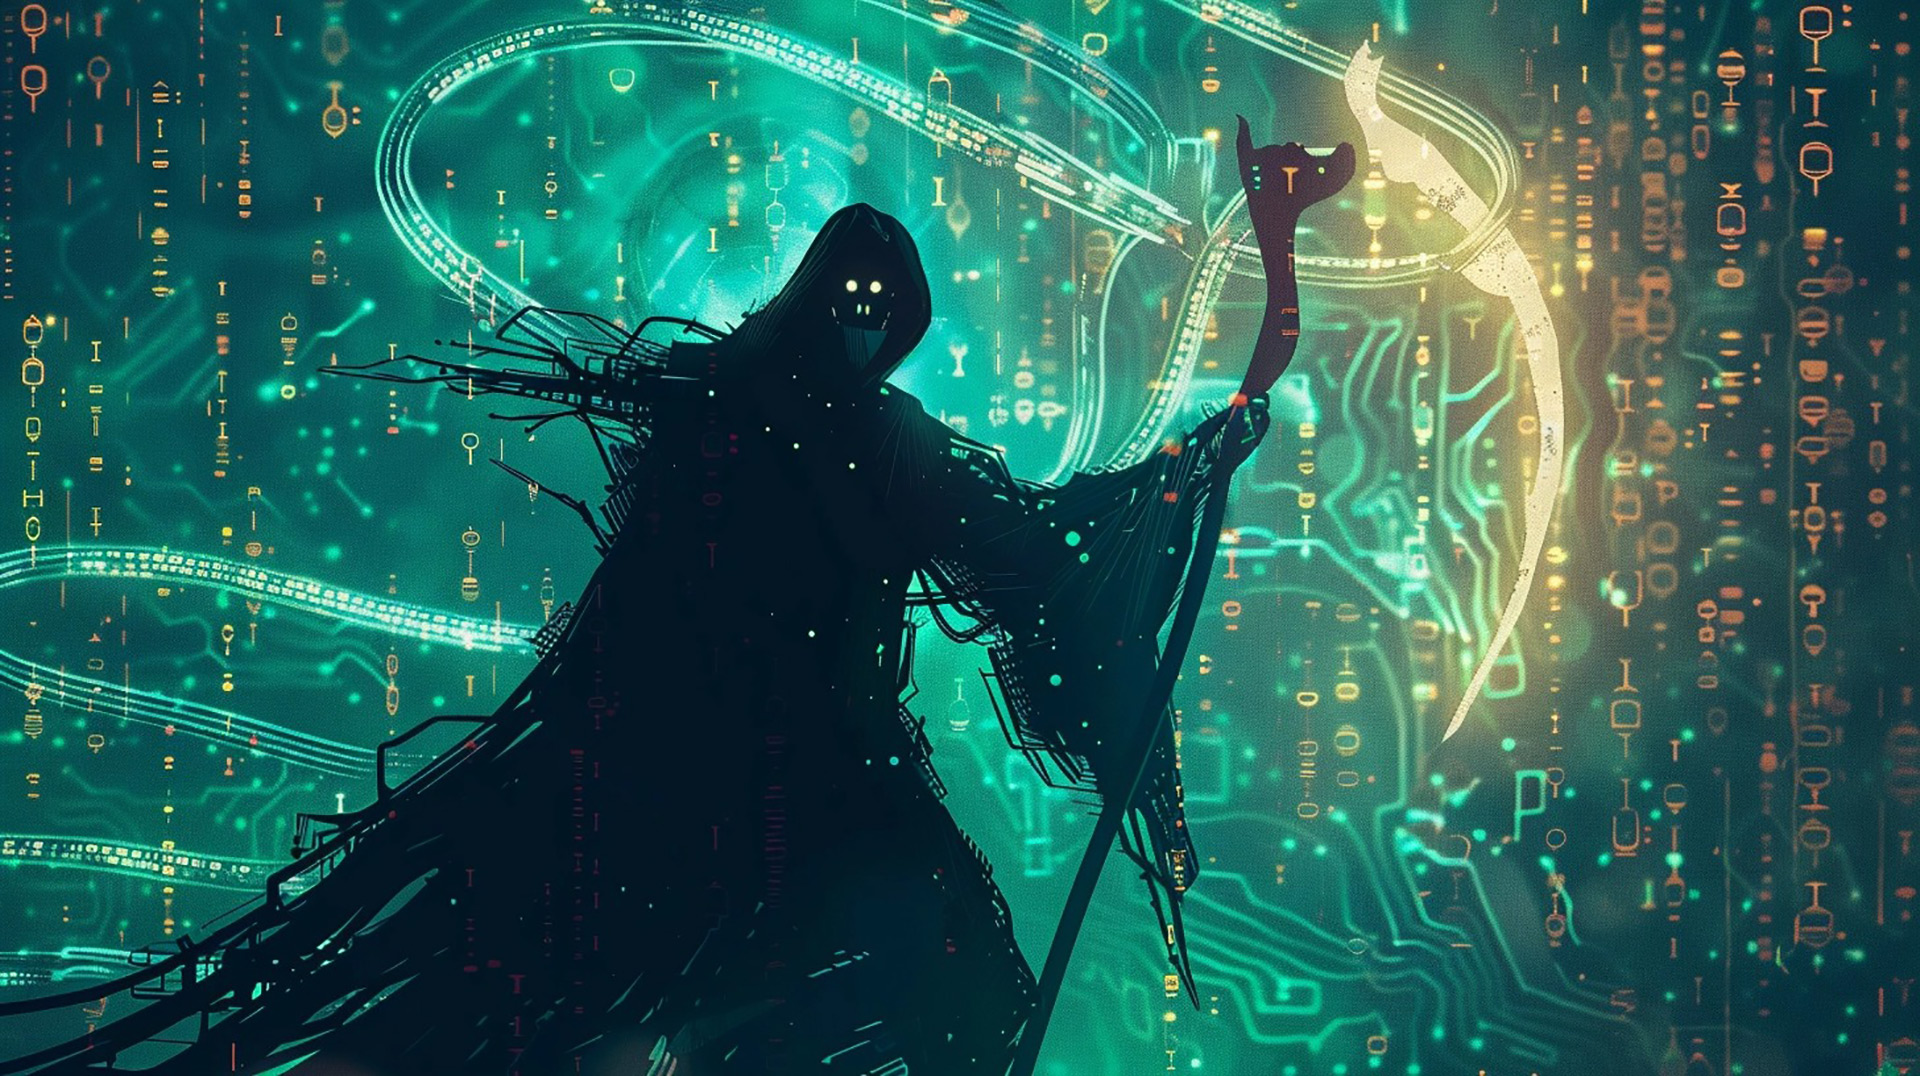 Dusk of Doom: Grim Reaper Wallpapers in 4K